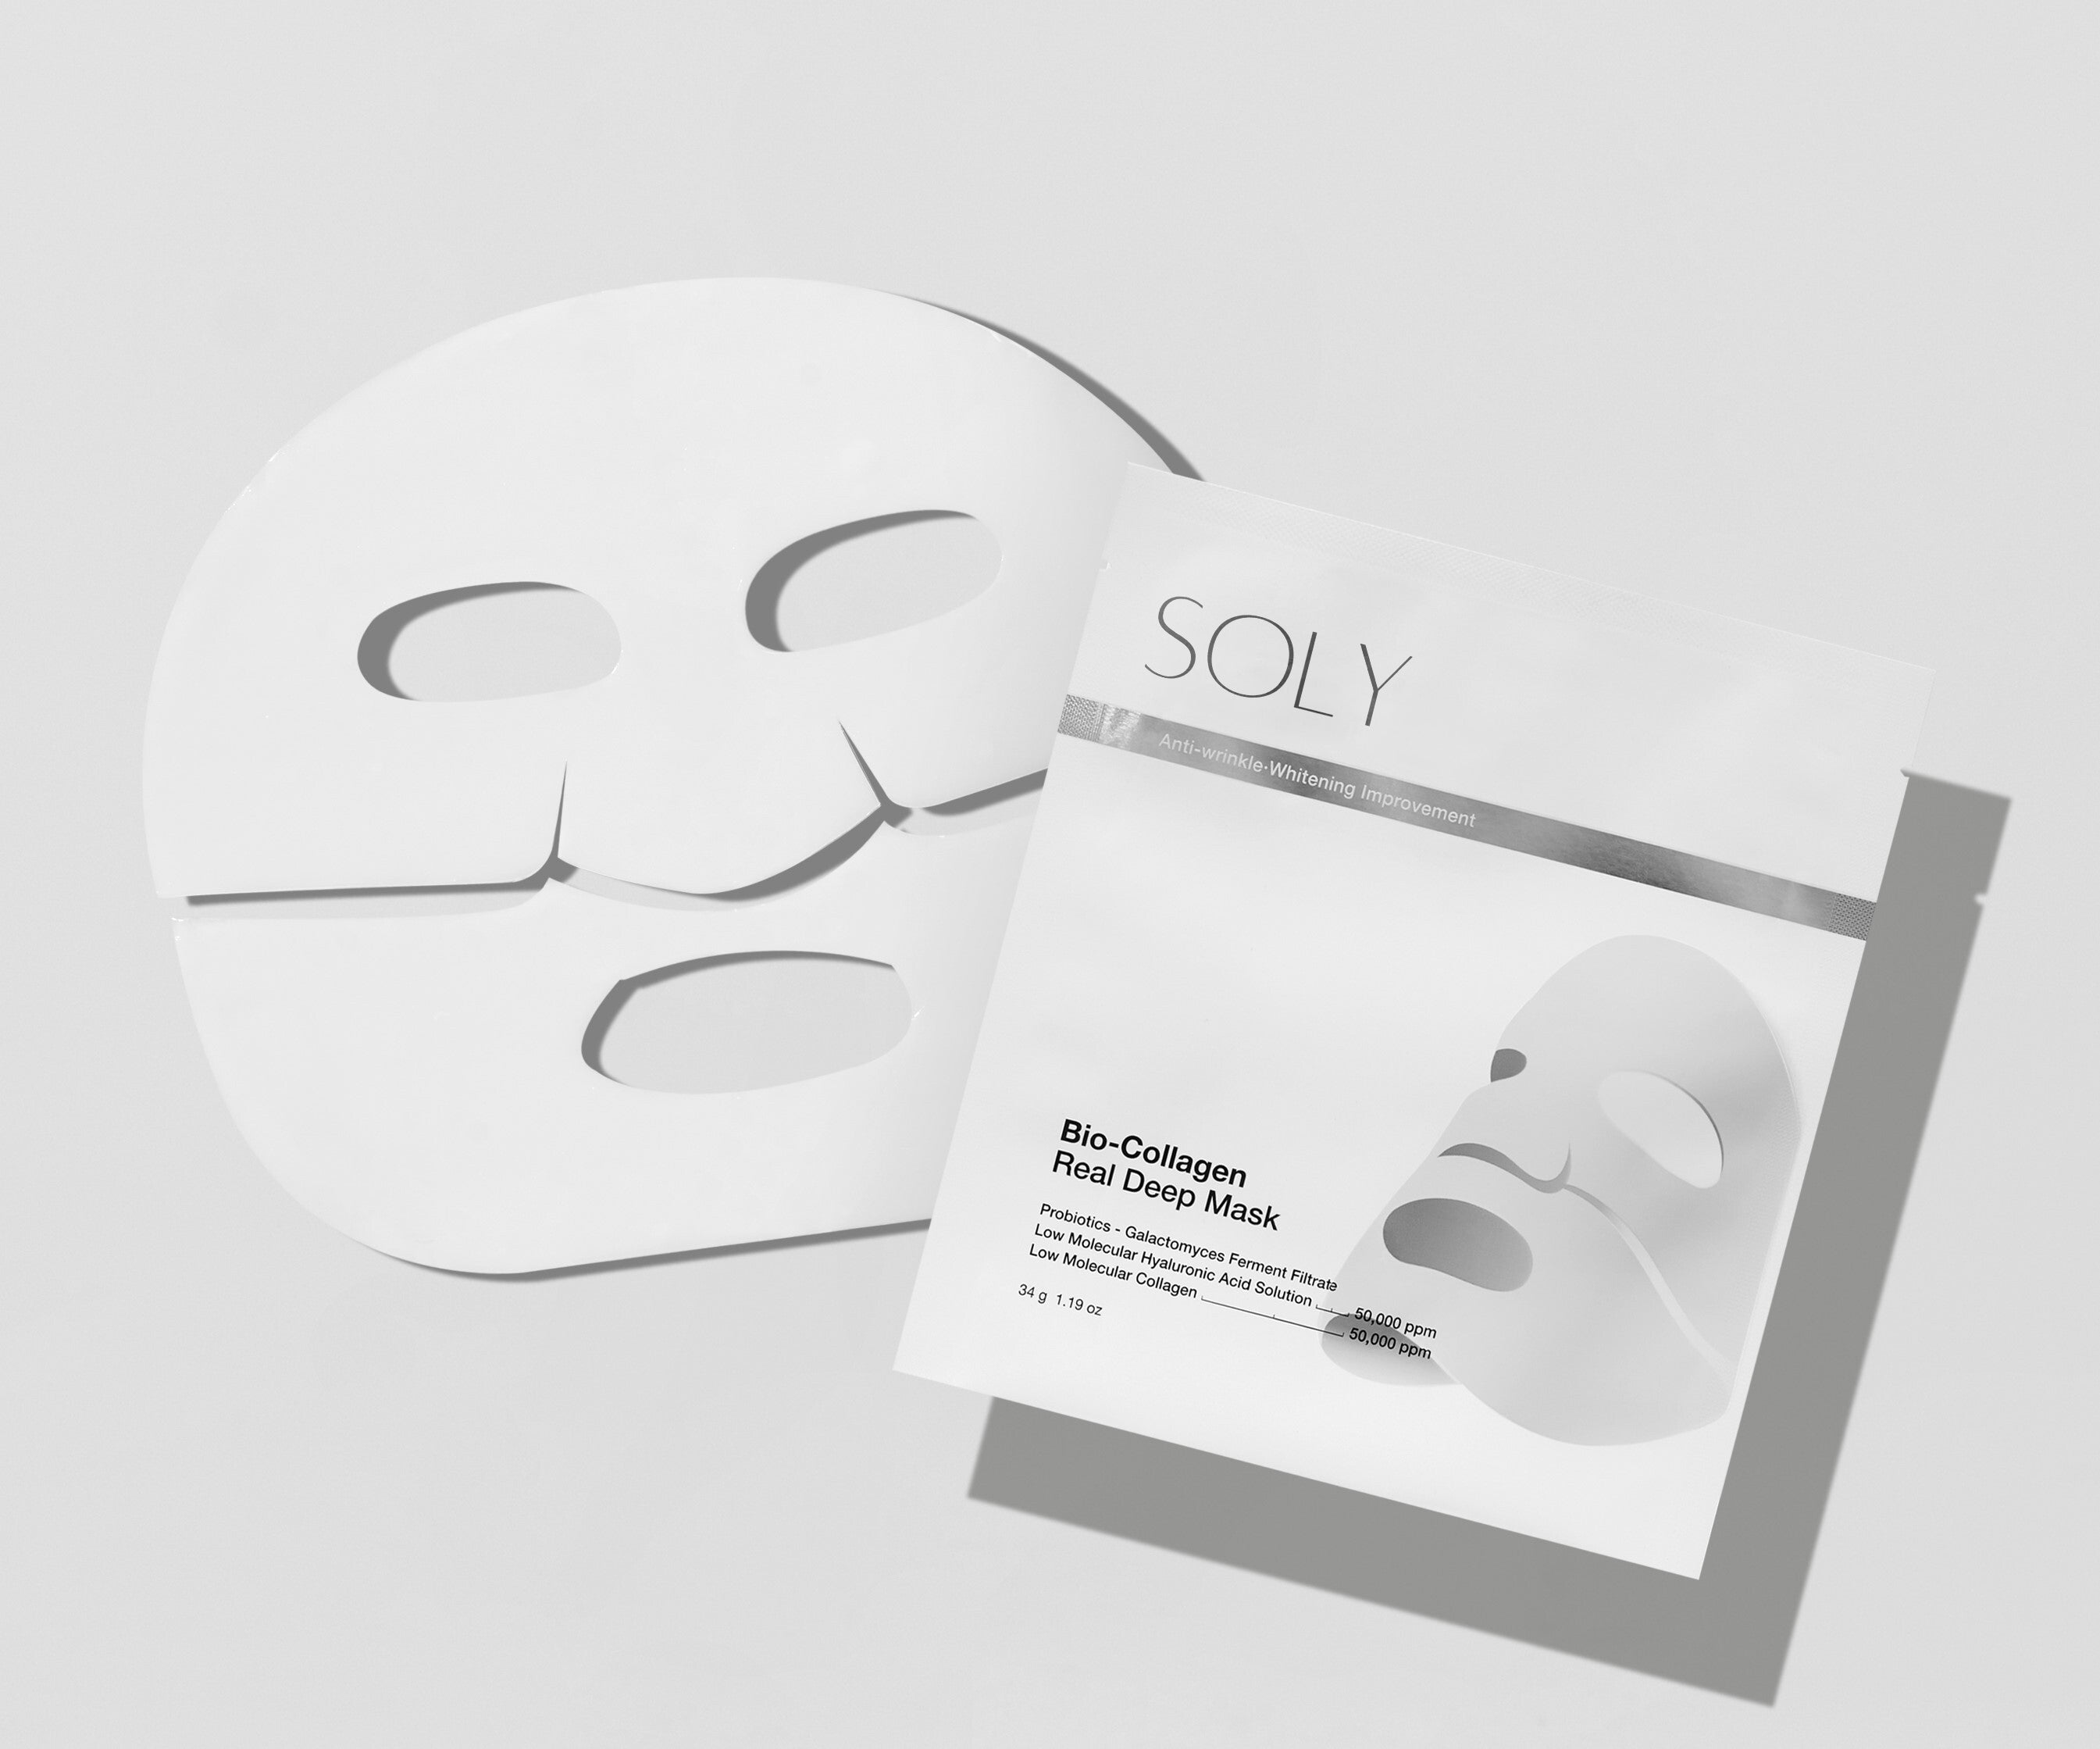 Soly Skin™ - Deep Bio-Collagen Mask